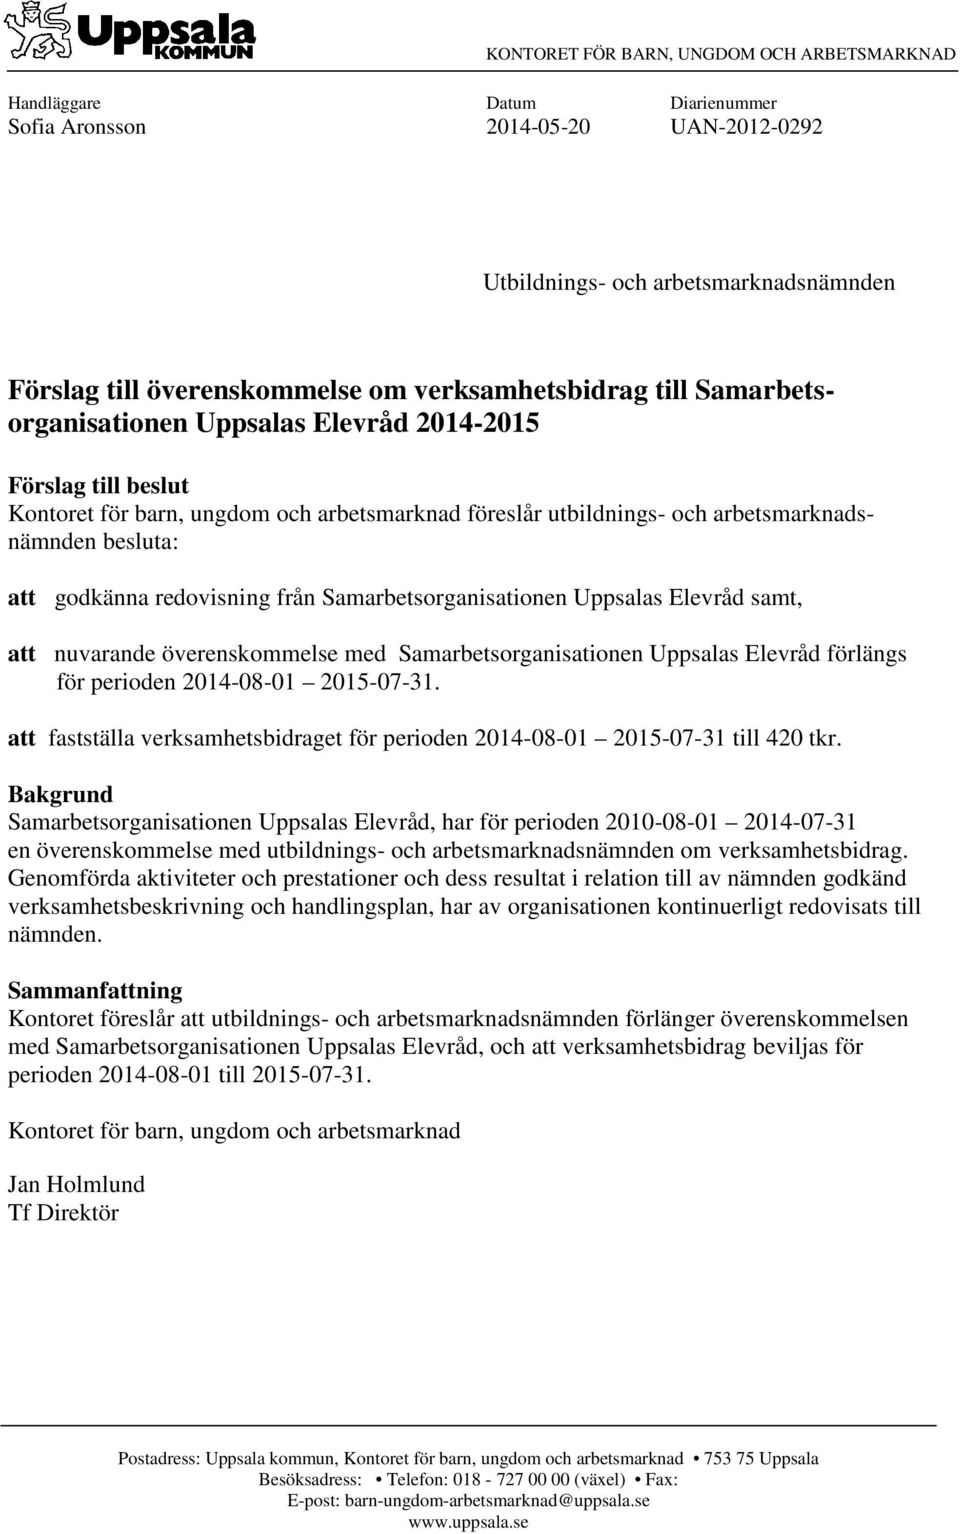 godkänna redovisning från Samarbetsorganisationen Uppsalas Elevråd samt, att nuvarande överenskommelse med Samarbetsorganisationen Uppsalas Elevråd förlängs för perioden 2014-08-01 2015-07-31.